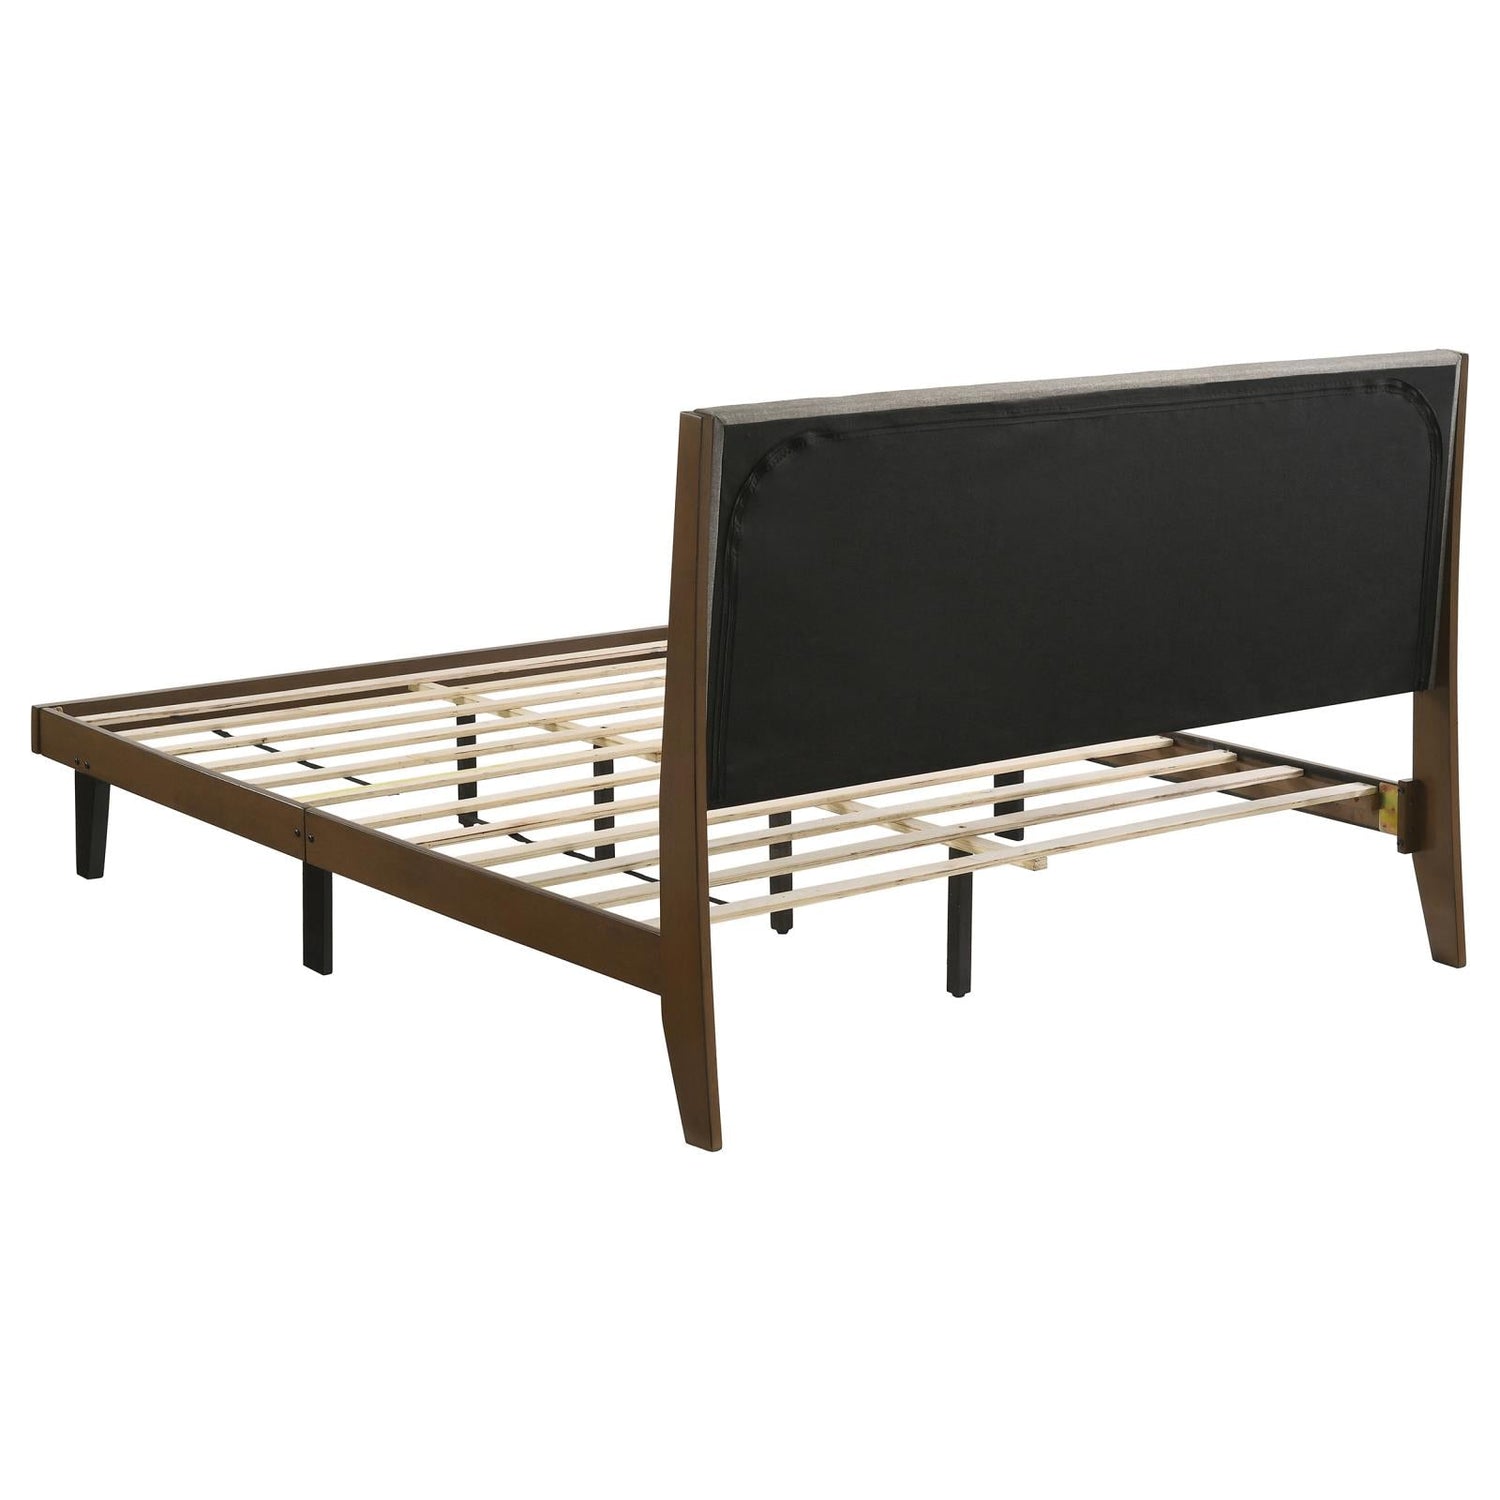 Mays Upholstered Eastern King Platform Bed Walnut Brown/Gray - 215961KE - Bien Home Furniture &amp; Electronics